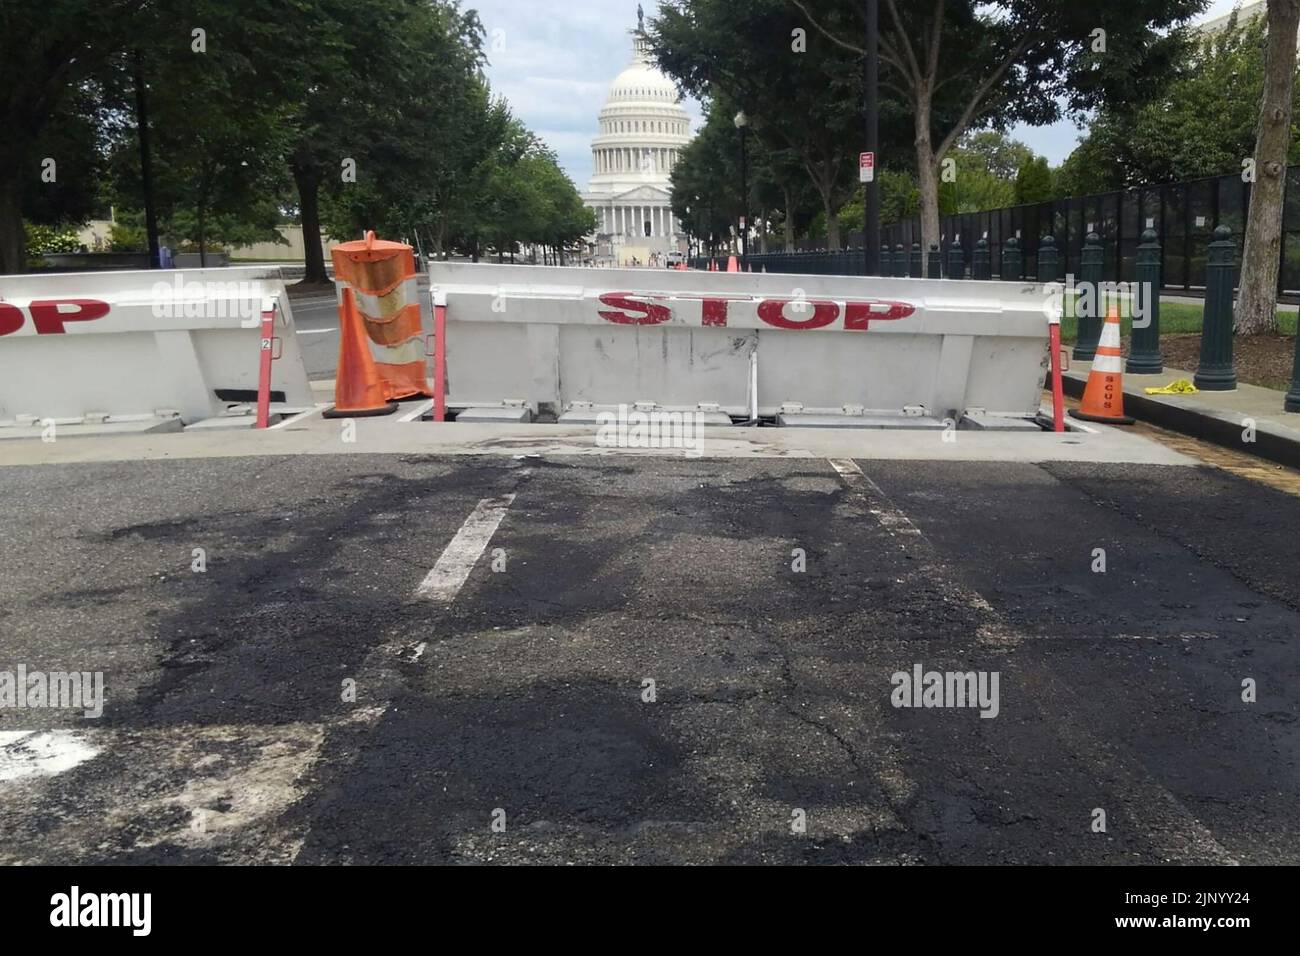 El pavimento carbonizado se deja atrás en un área donde un hombre chocó con su coche en una barricada cerca del Capitolio de EE.UU. Y disparó disparos al aire antes de matarse a sí mismo, en Washington, EE.UU. 14 de agosto de 2022. REUTERS/Greg Savoy Foto de stock